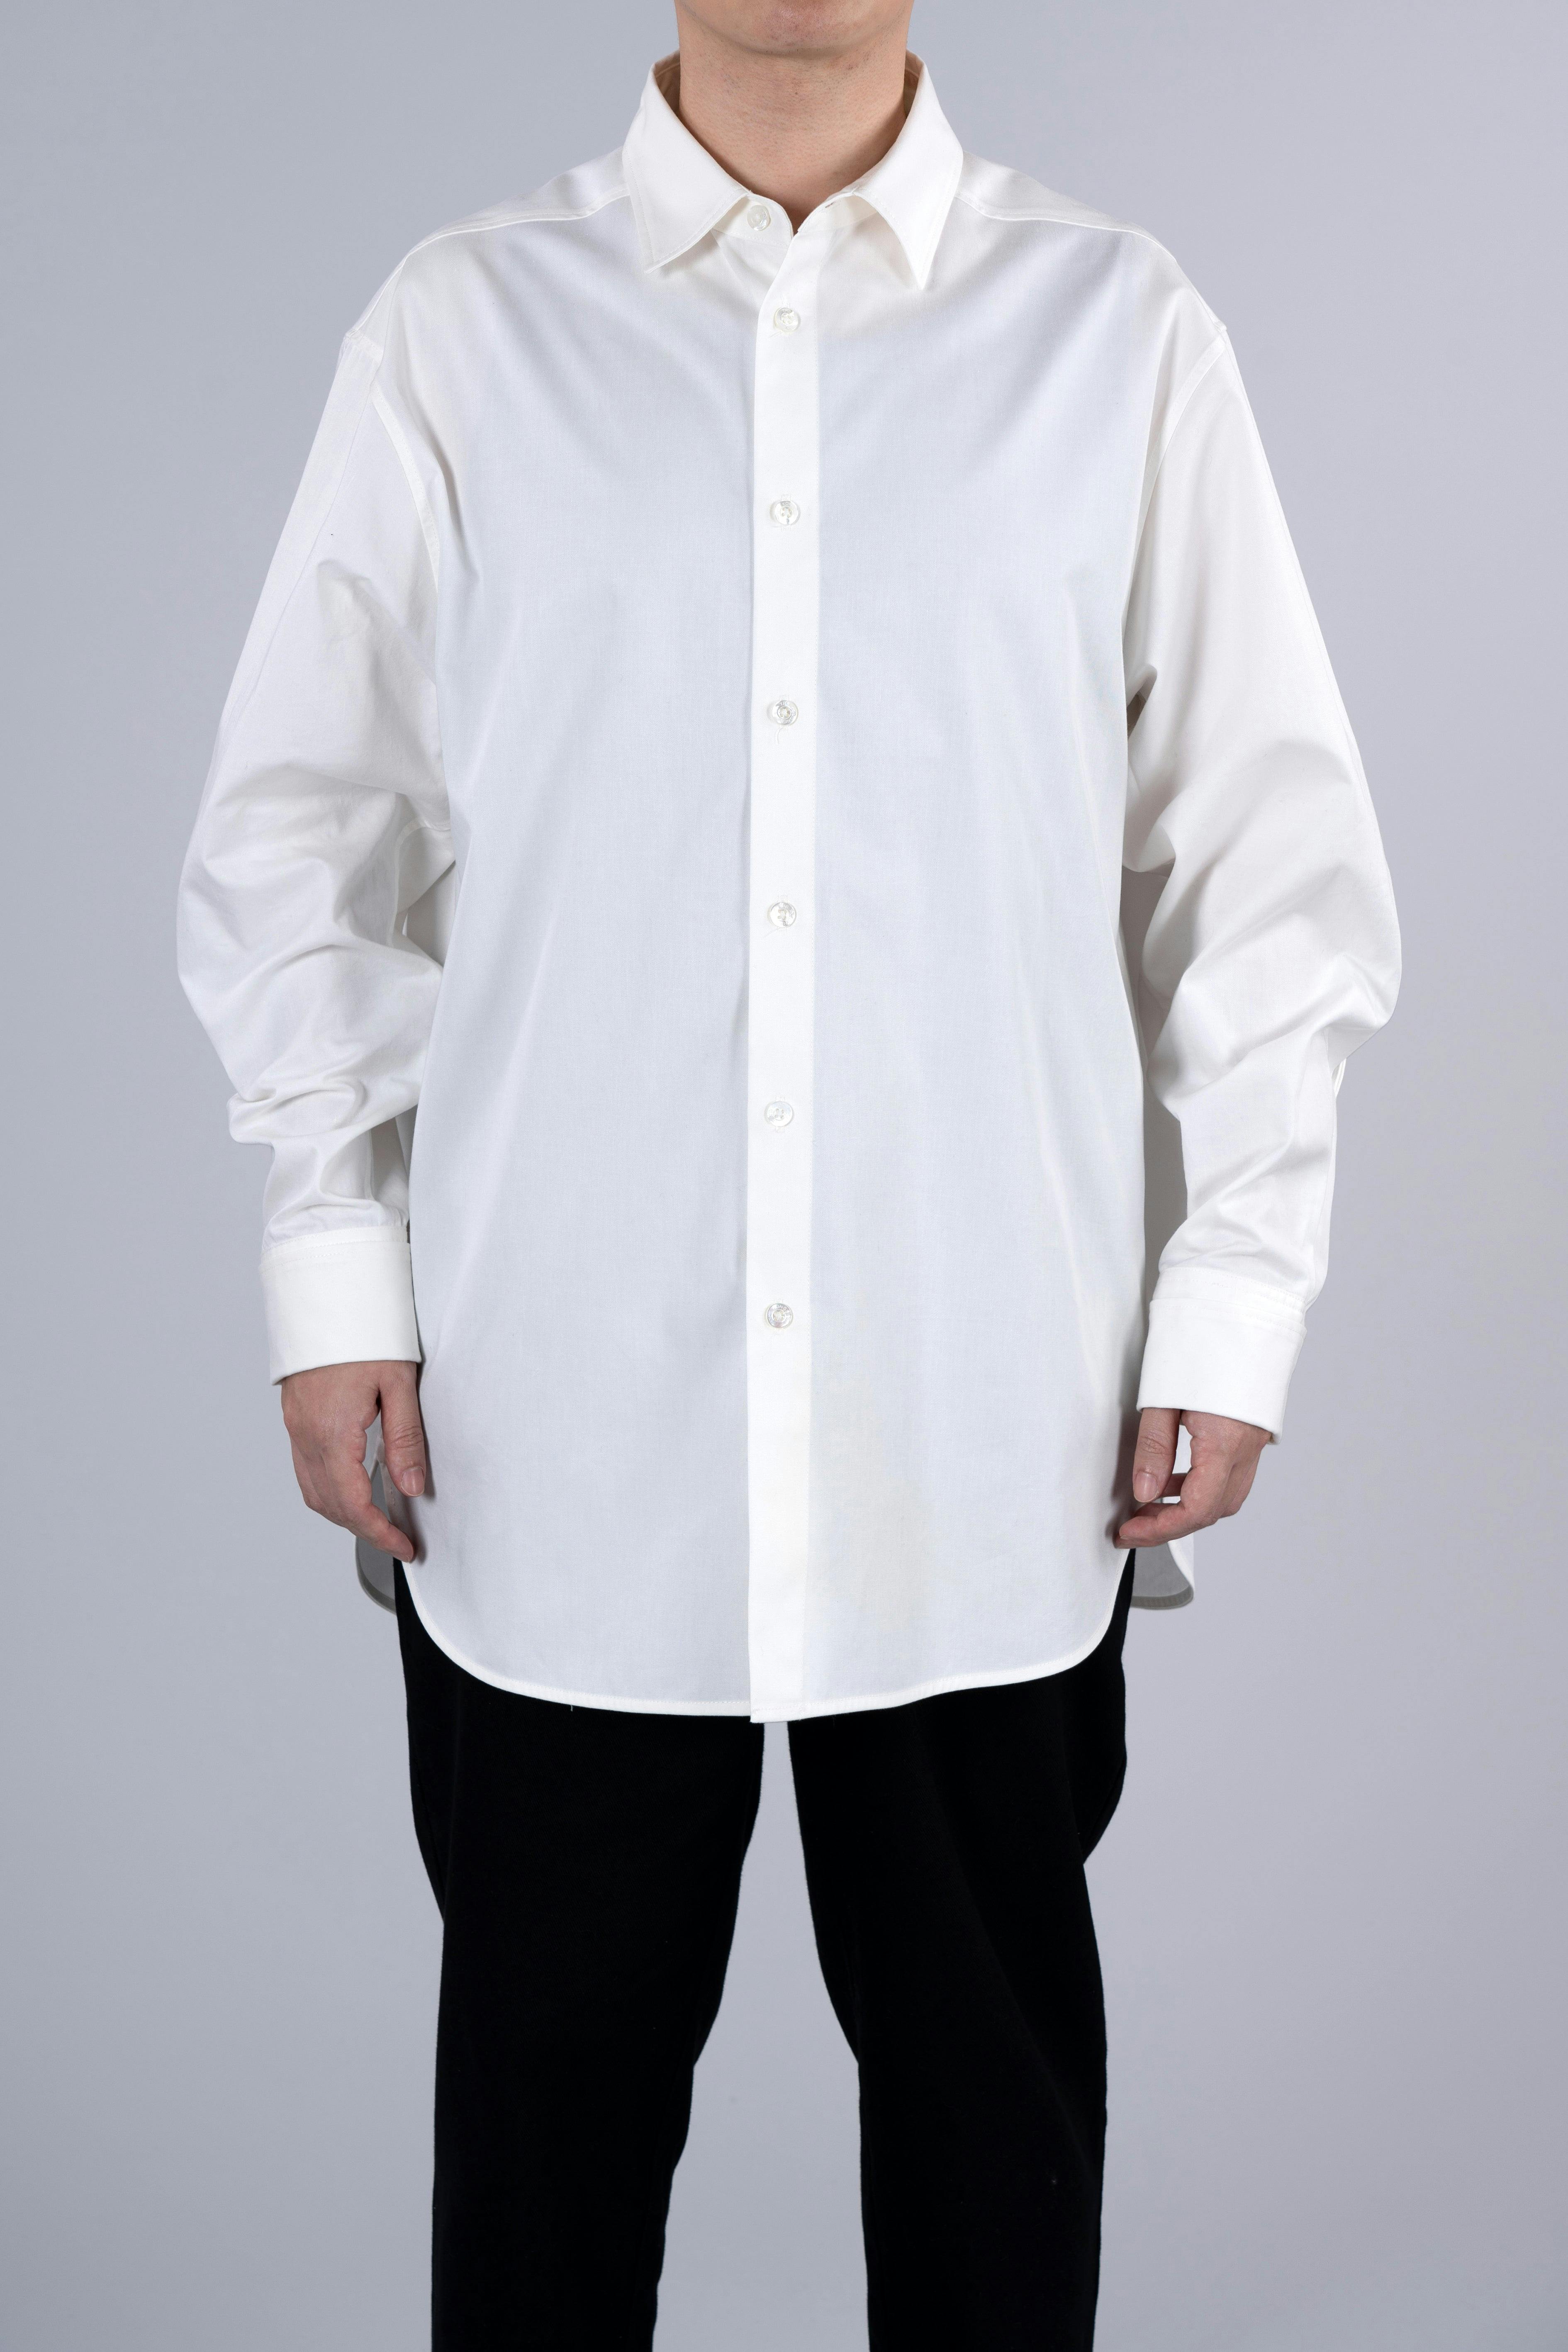 ˝ORDER˝ Oversized Shirt - Plain White